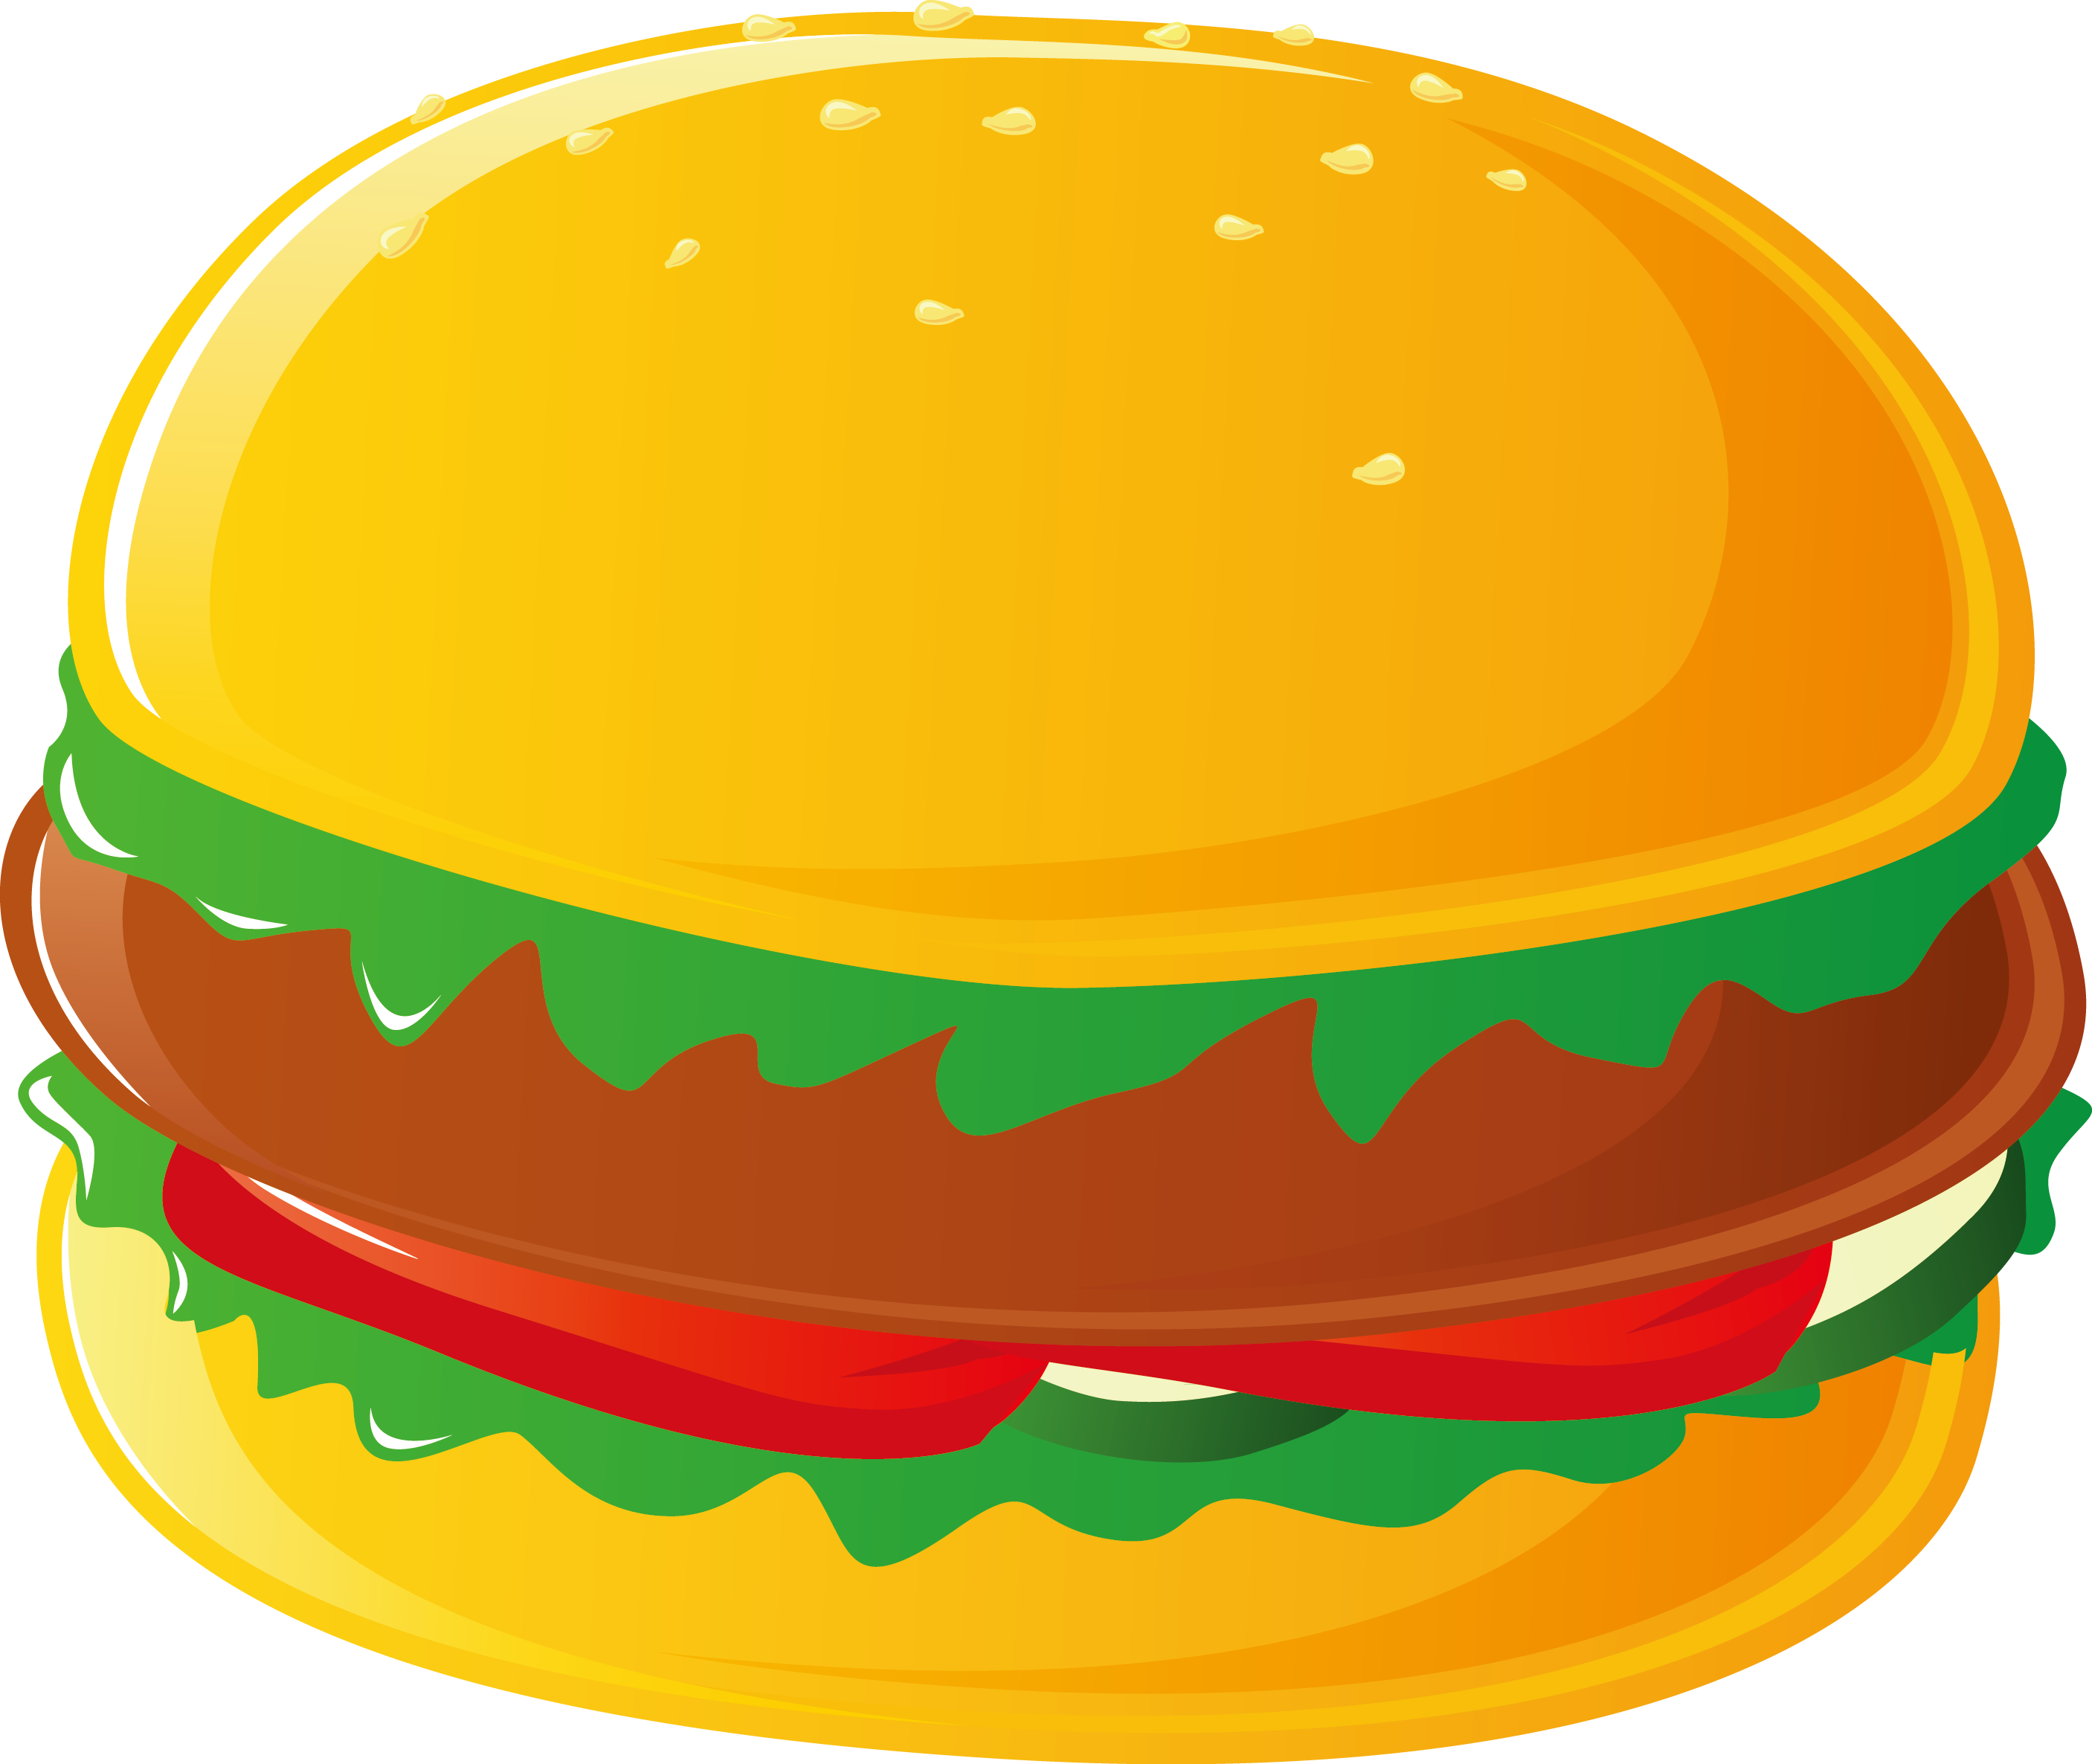 Hamburger Hot Dog Cheeseburger Pizza French Fries - Fast Food Vector Free (2813x2372)